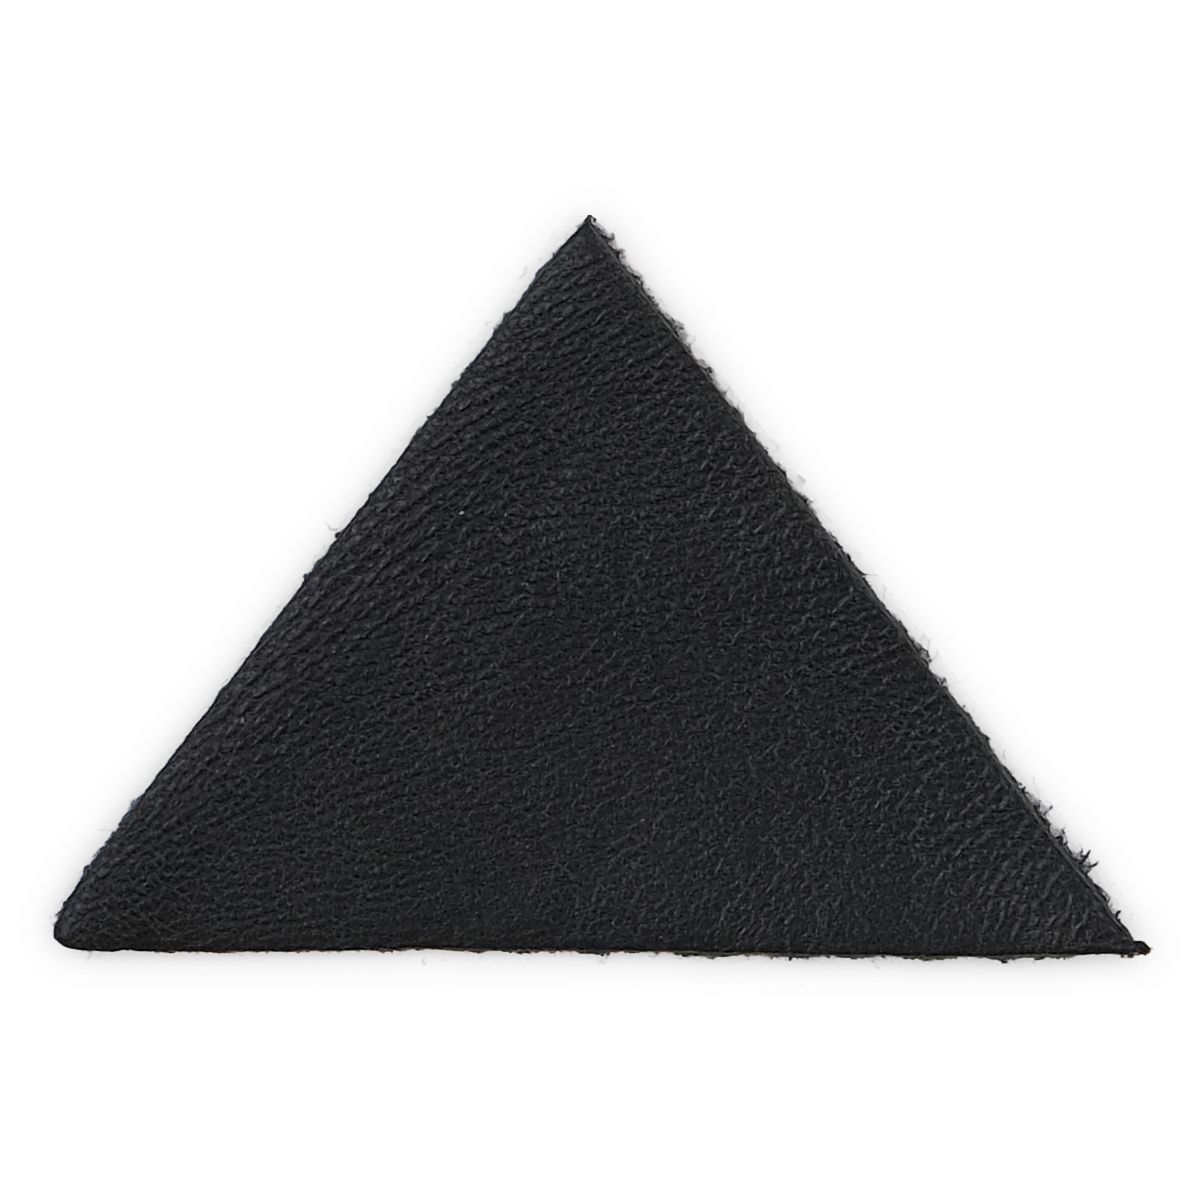 Термоаппликация из кожи Треугольник сторона 5см, 2шт в уп., 1 кожа 1 черный 202